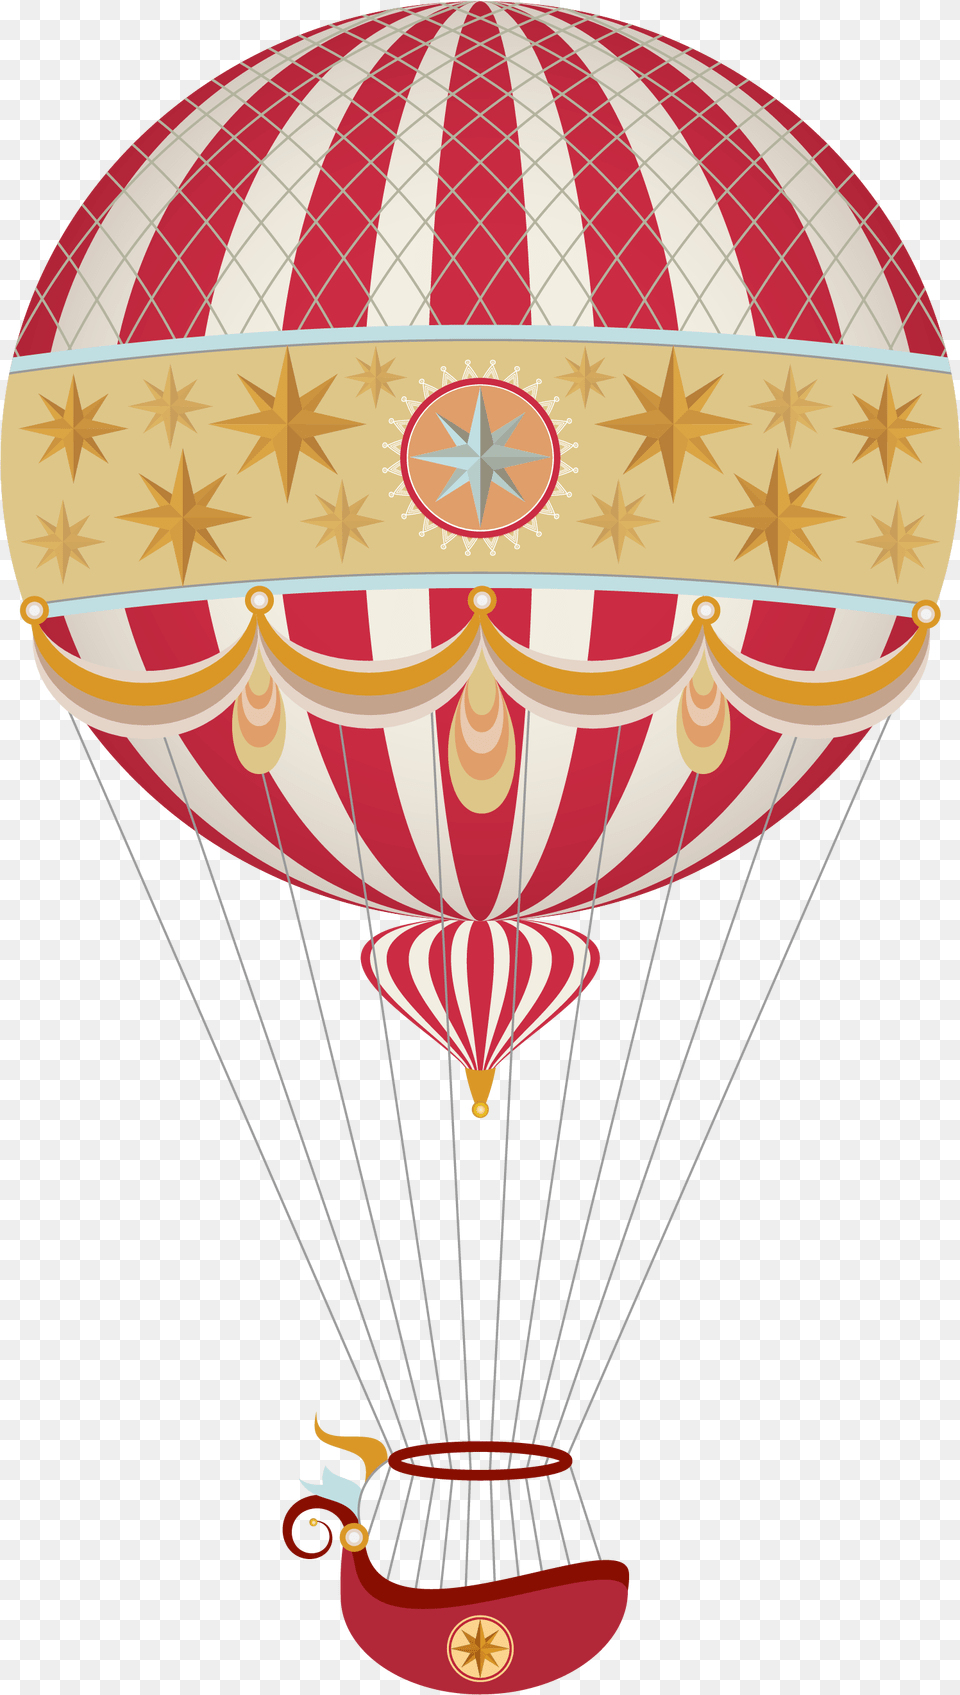 Vintage Balloons Clip Art Vintage Hot Air Balloon, Aircraft, Hot Air Balloon, Transportation, Vehicle Png Image